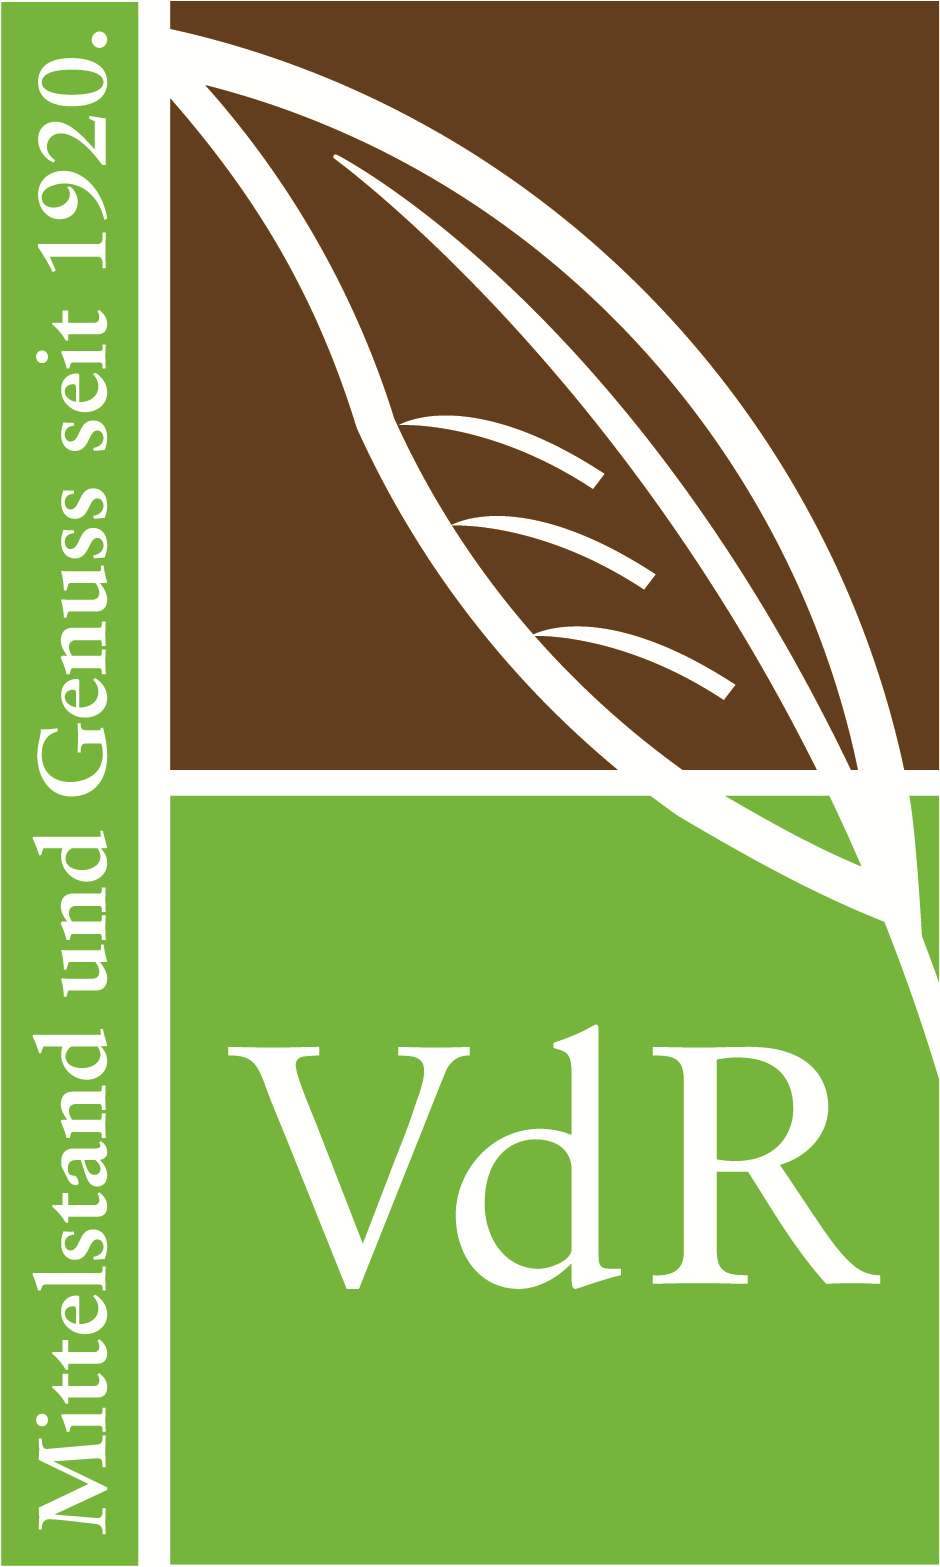 VdR - Verband der deutschen Rauchtabakindustrie e.V.